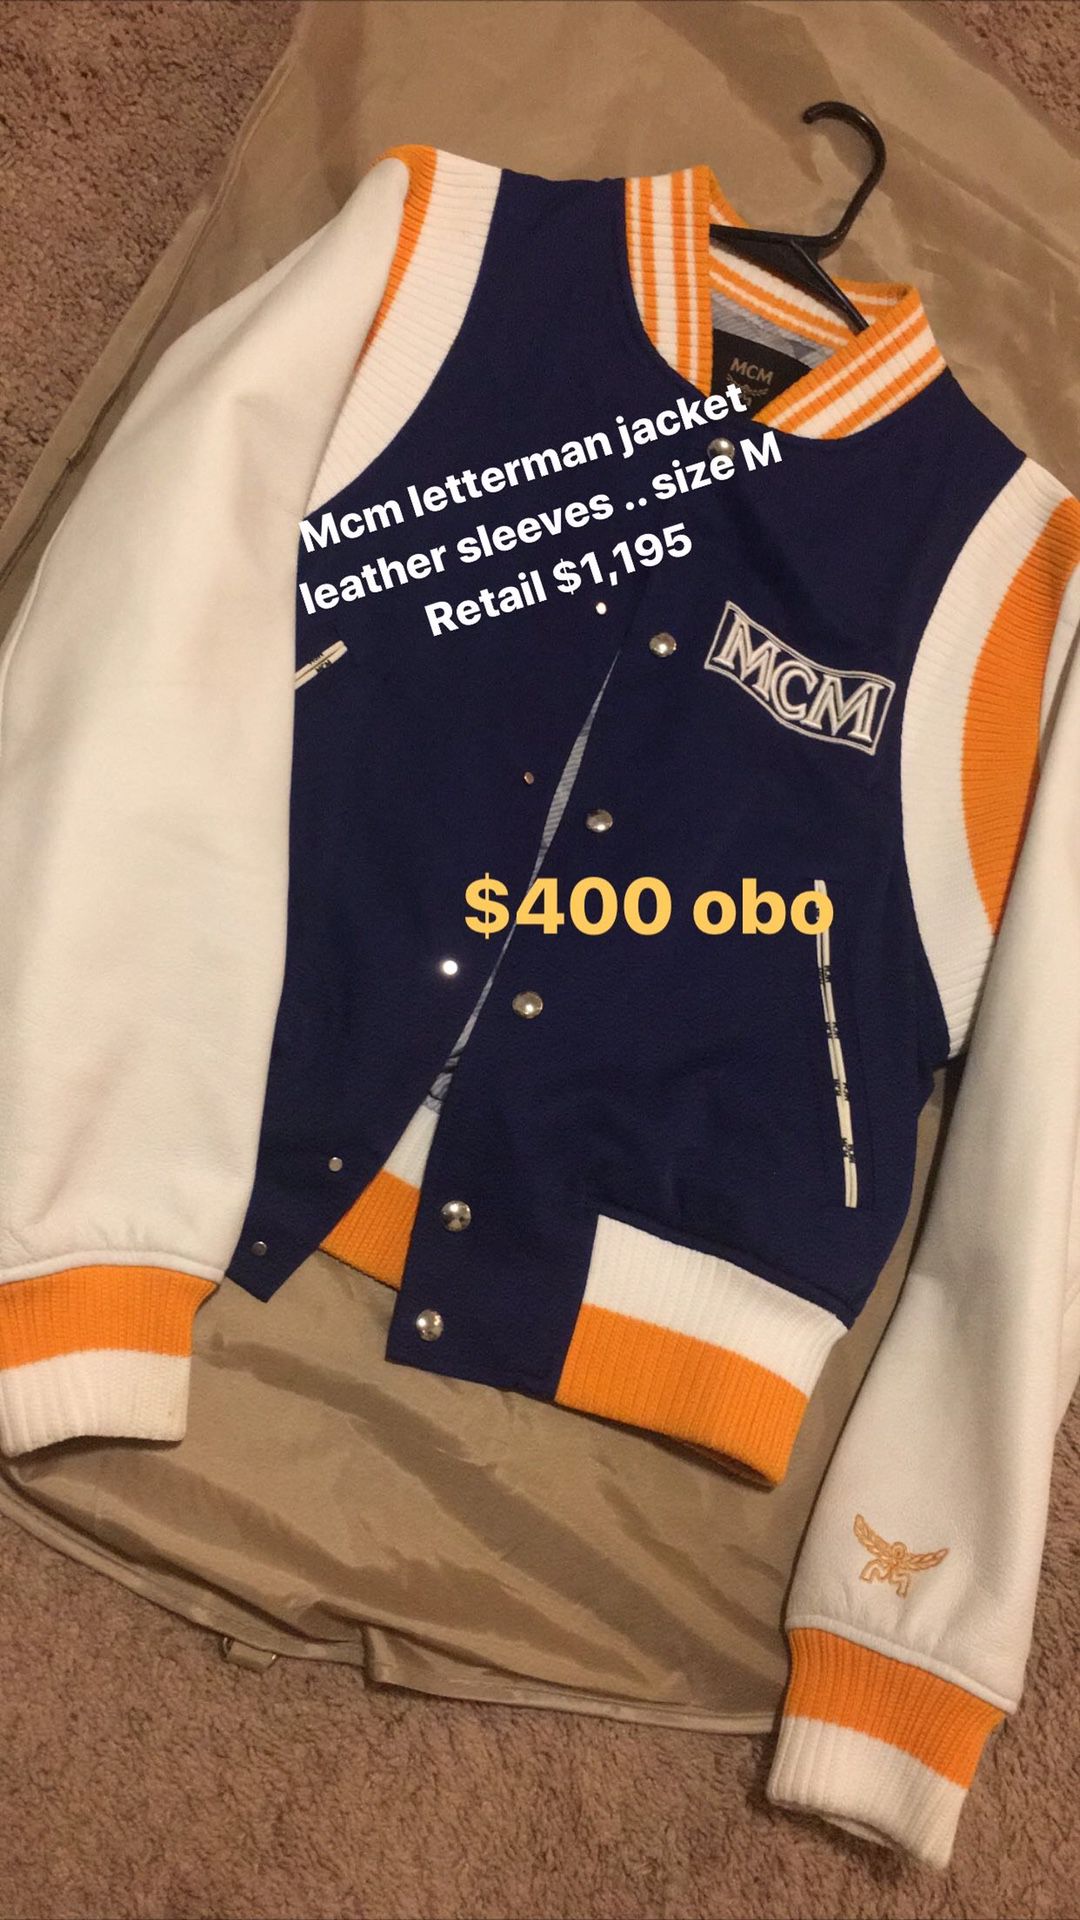 Mcm letterman jacket authentic